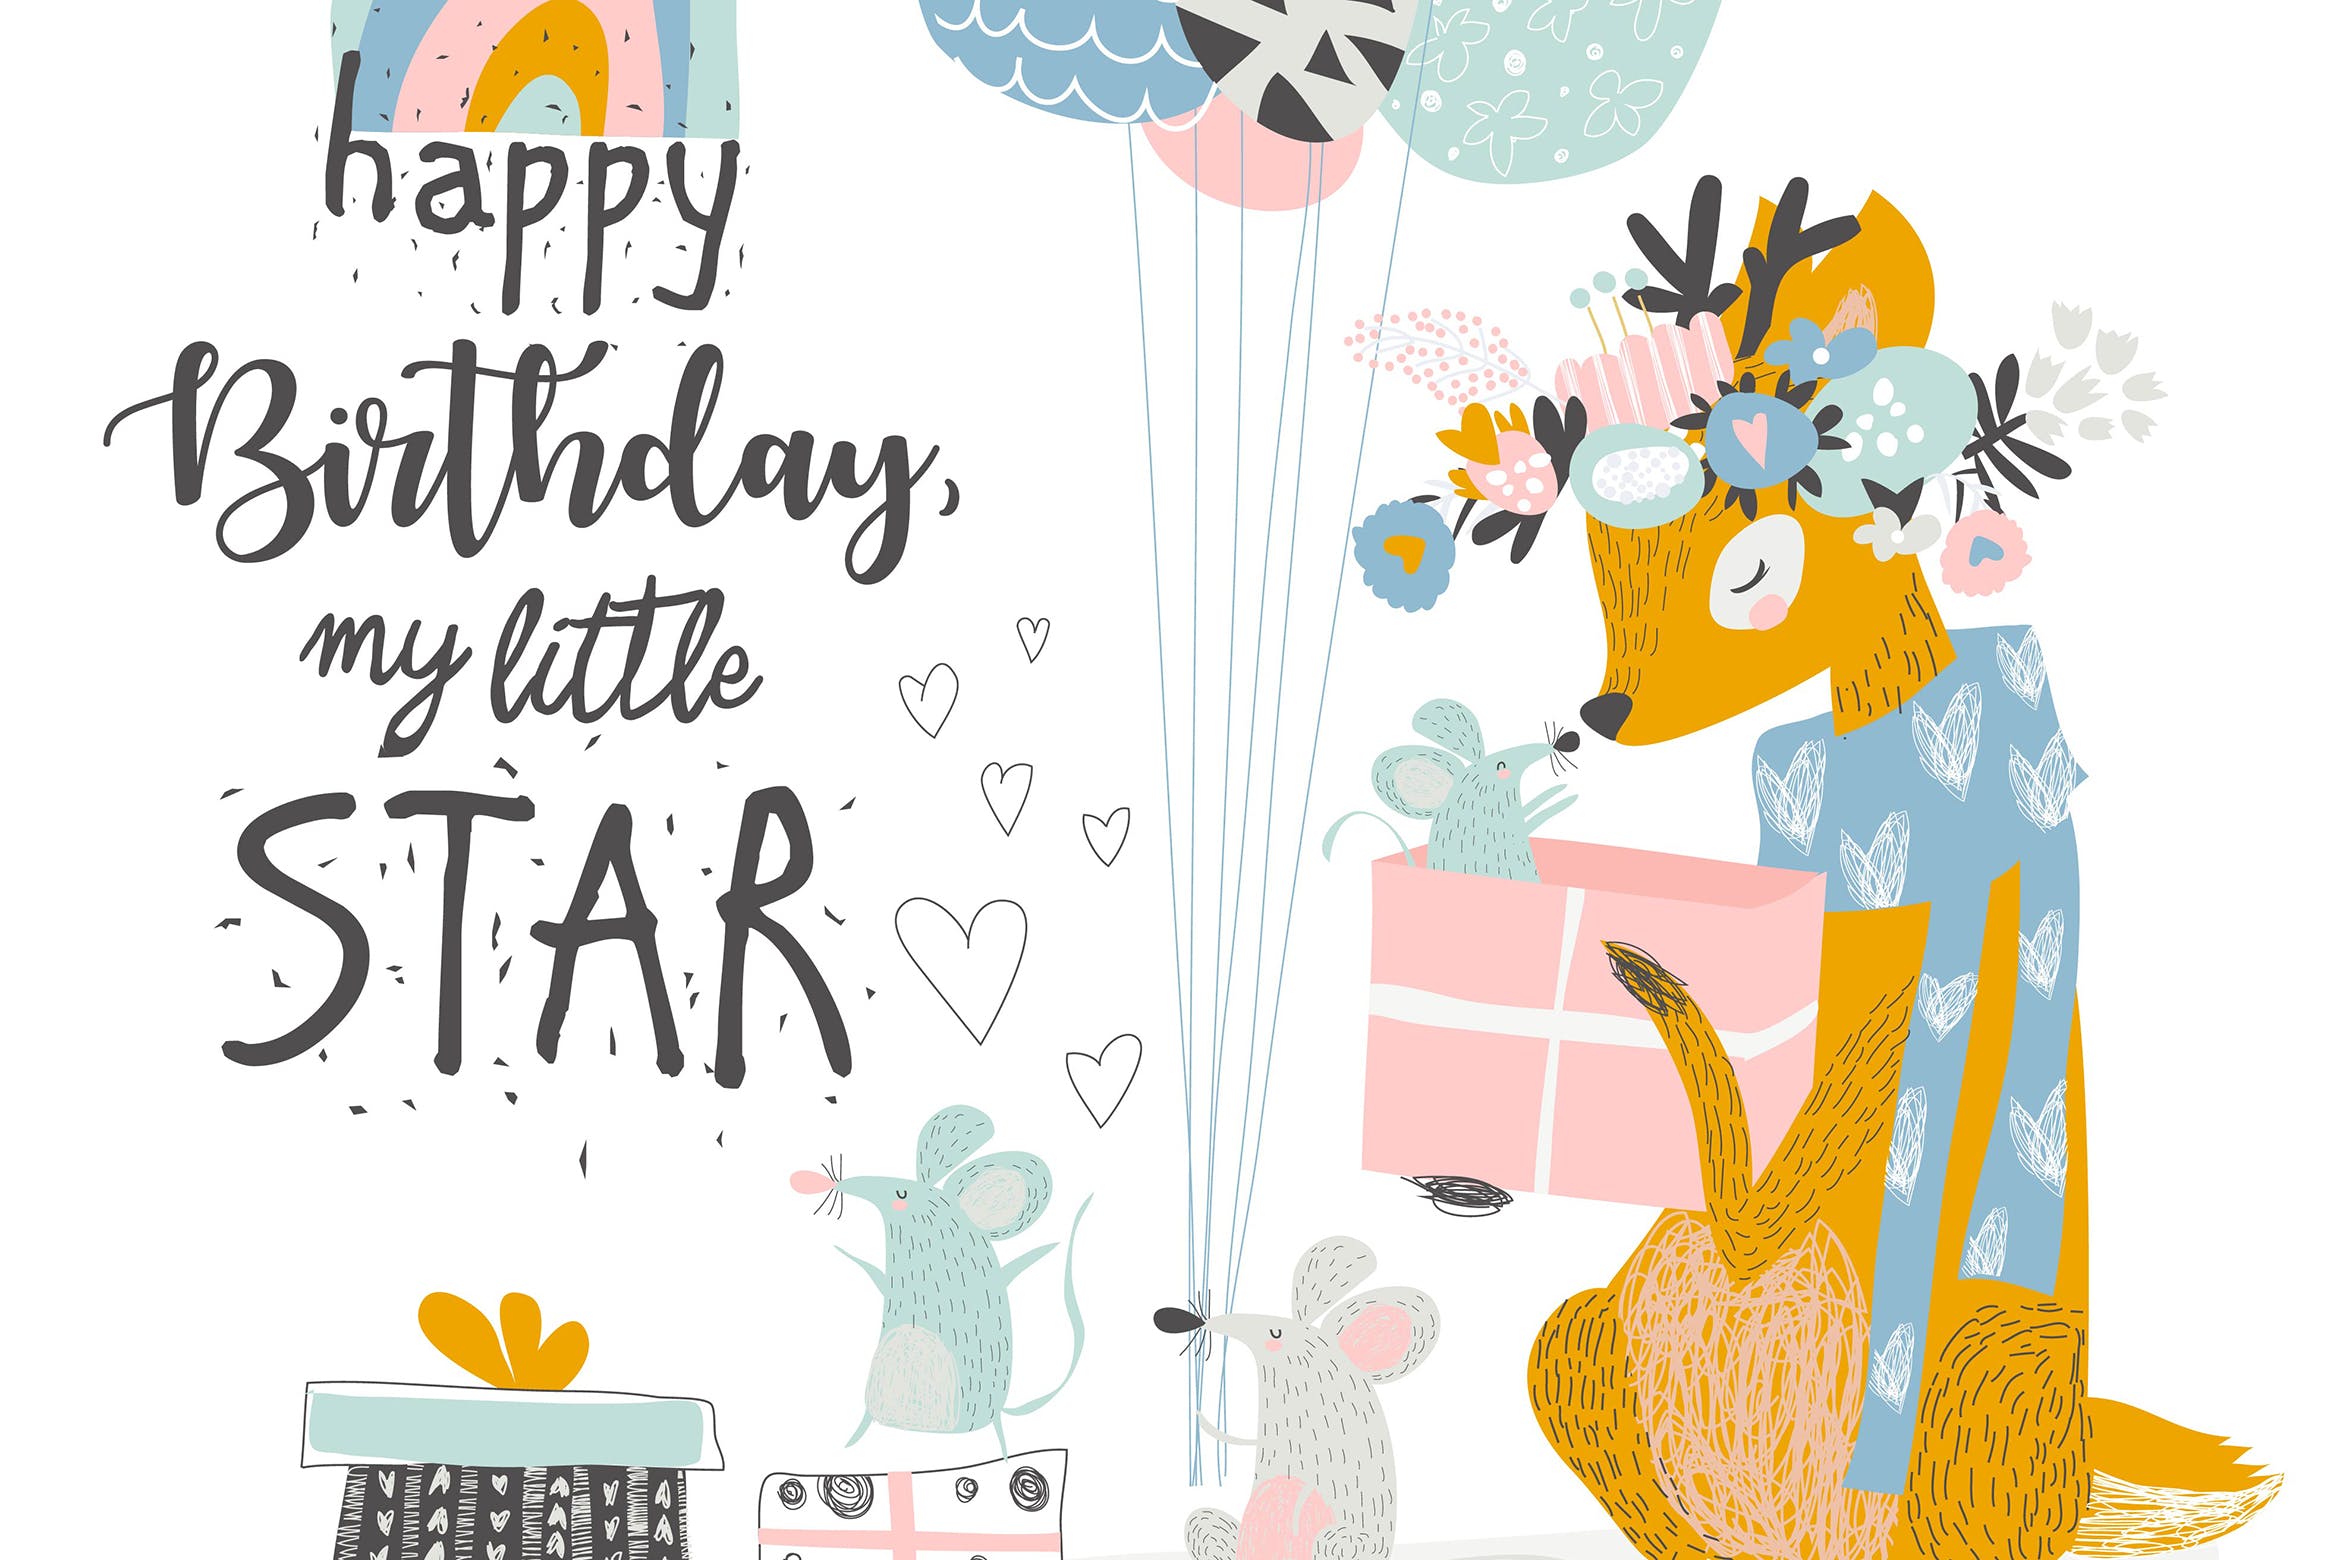 可爱麋鹿&老鼠矢量动物手绘插画设计素材 Vector Greeting Birthday card with cute deer and m插图